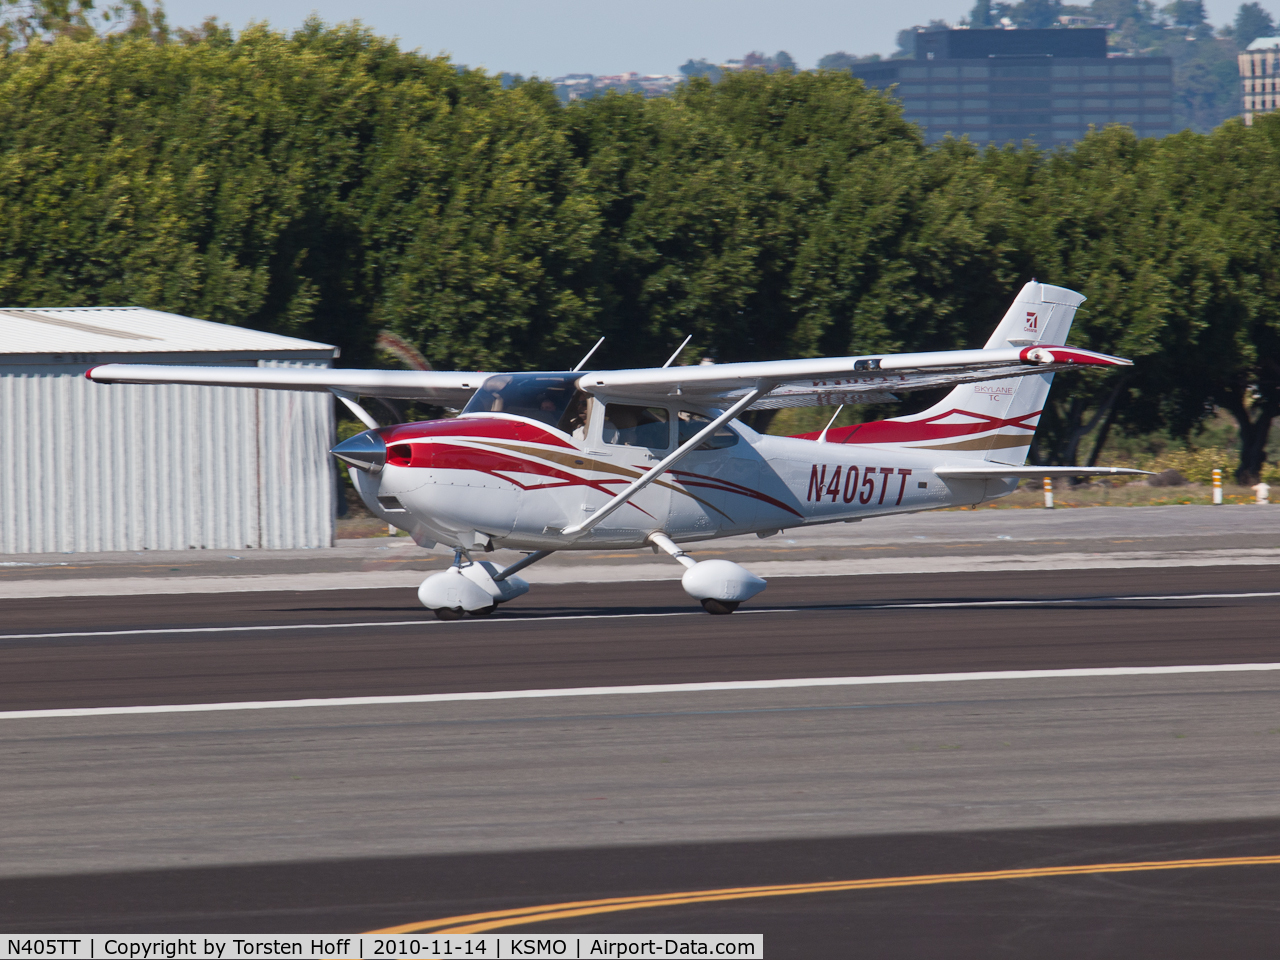 N405TT, 2007 Cessna T182T Turbo Skylane C/N T18208768, N405TT departing from RWY 21